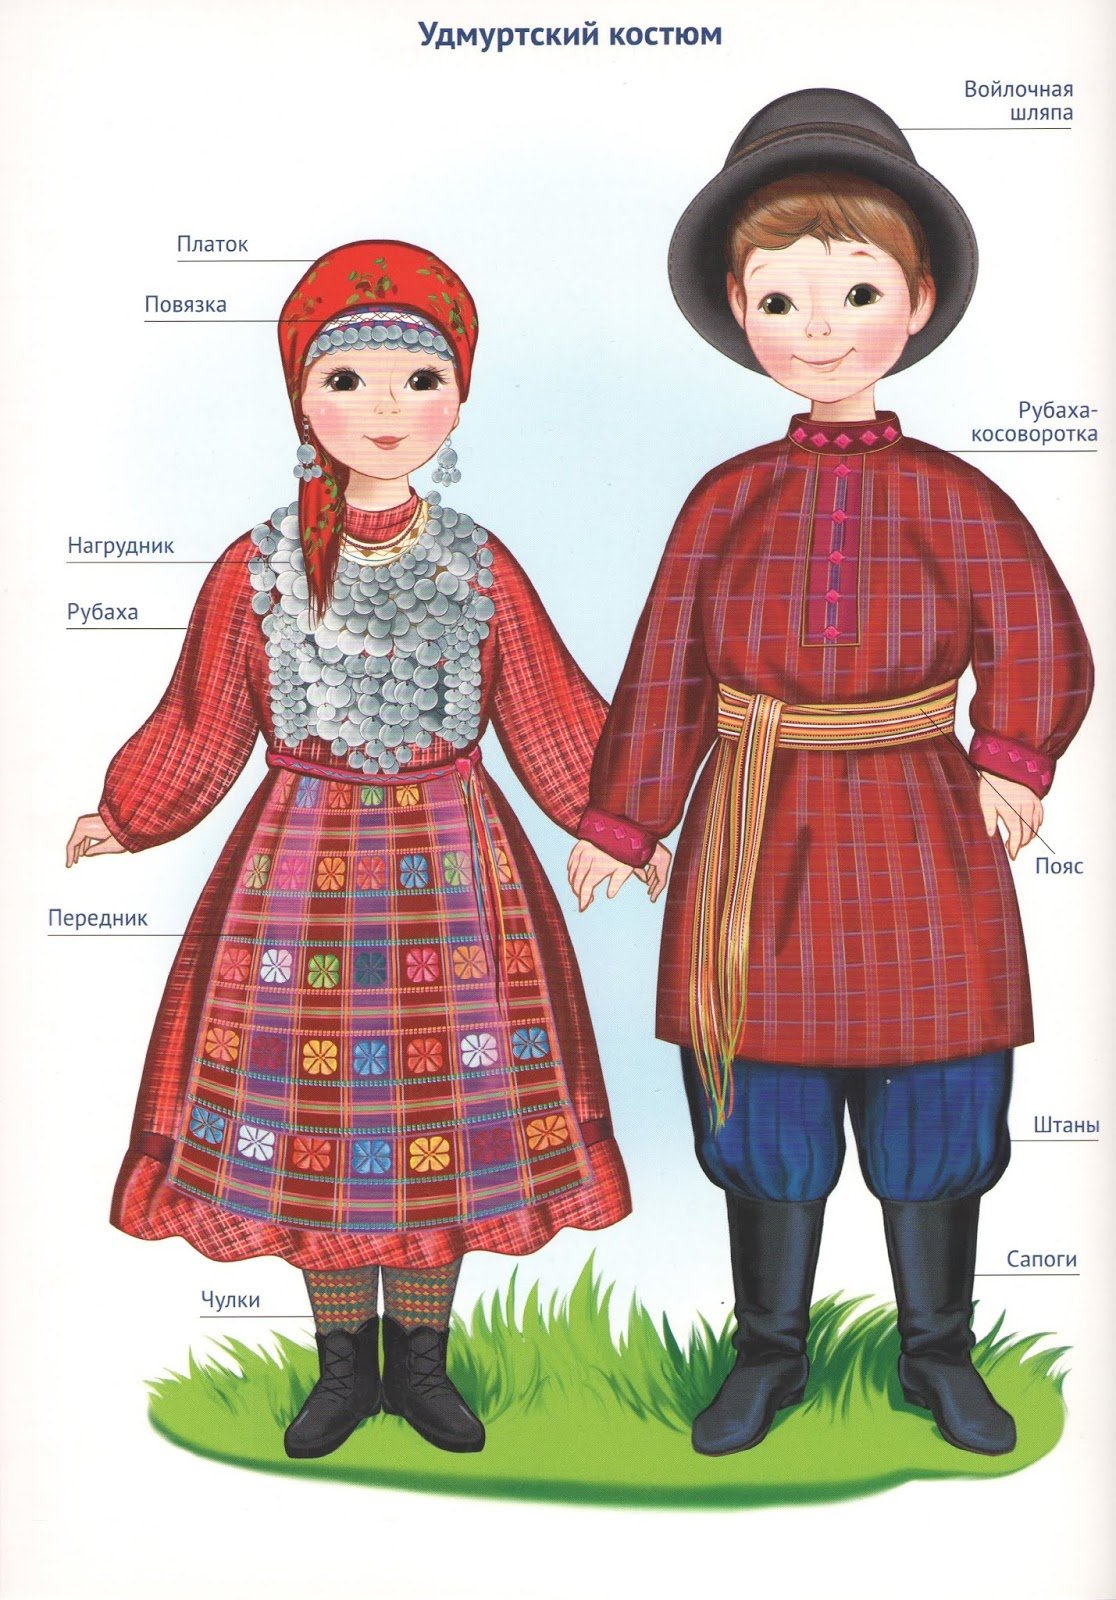 Национальные костюмы народов России удмурты